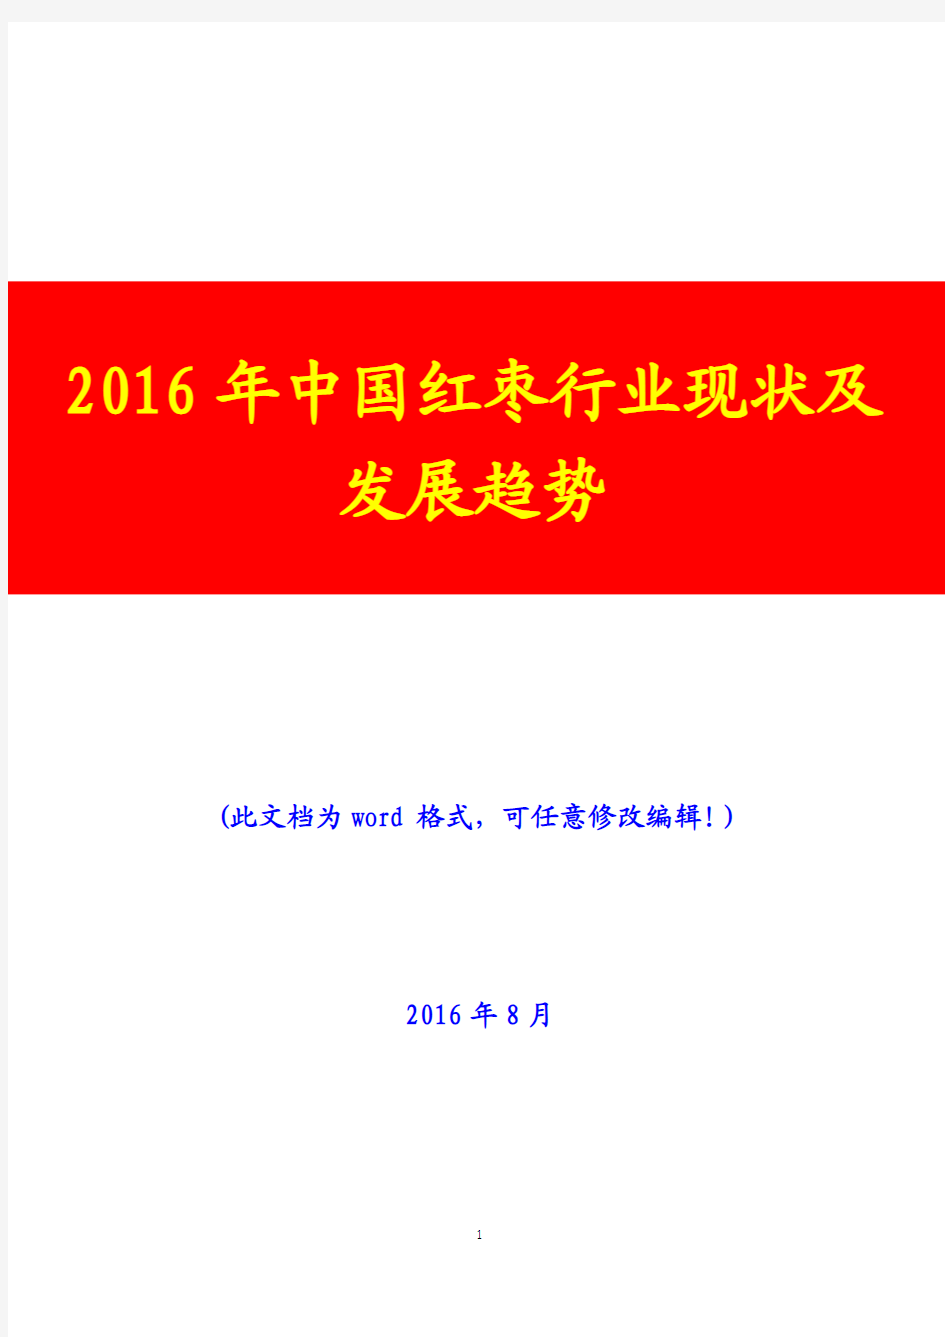 2016年中国红枣行业现状及发展趋势(经典版)